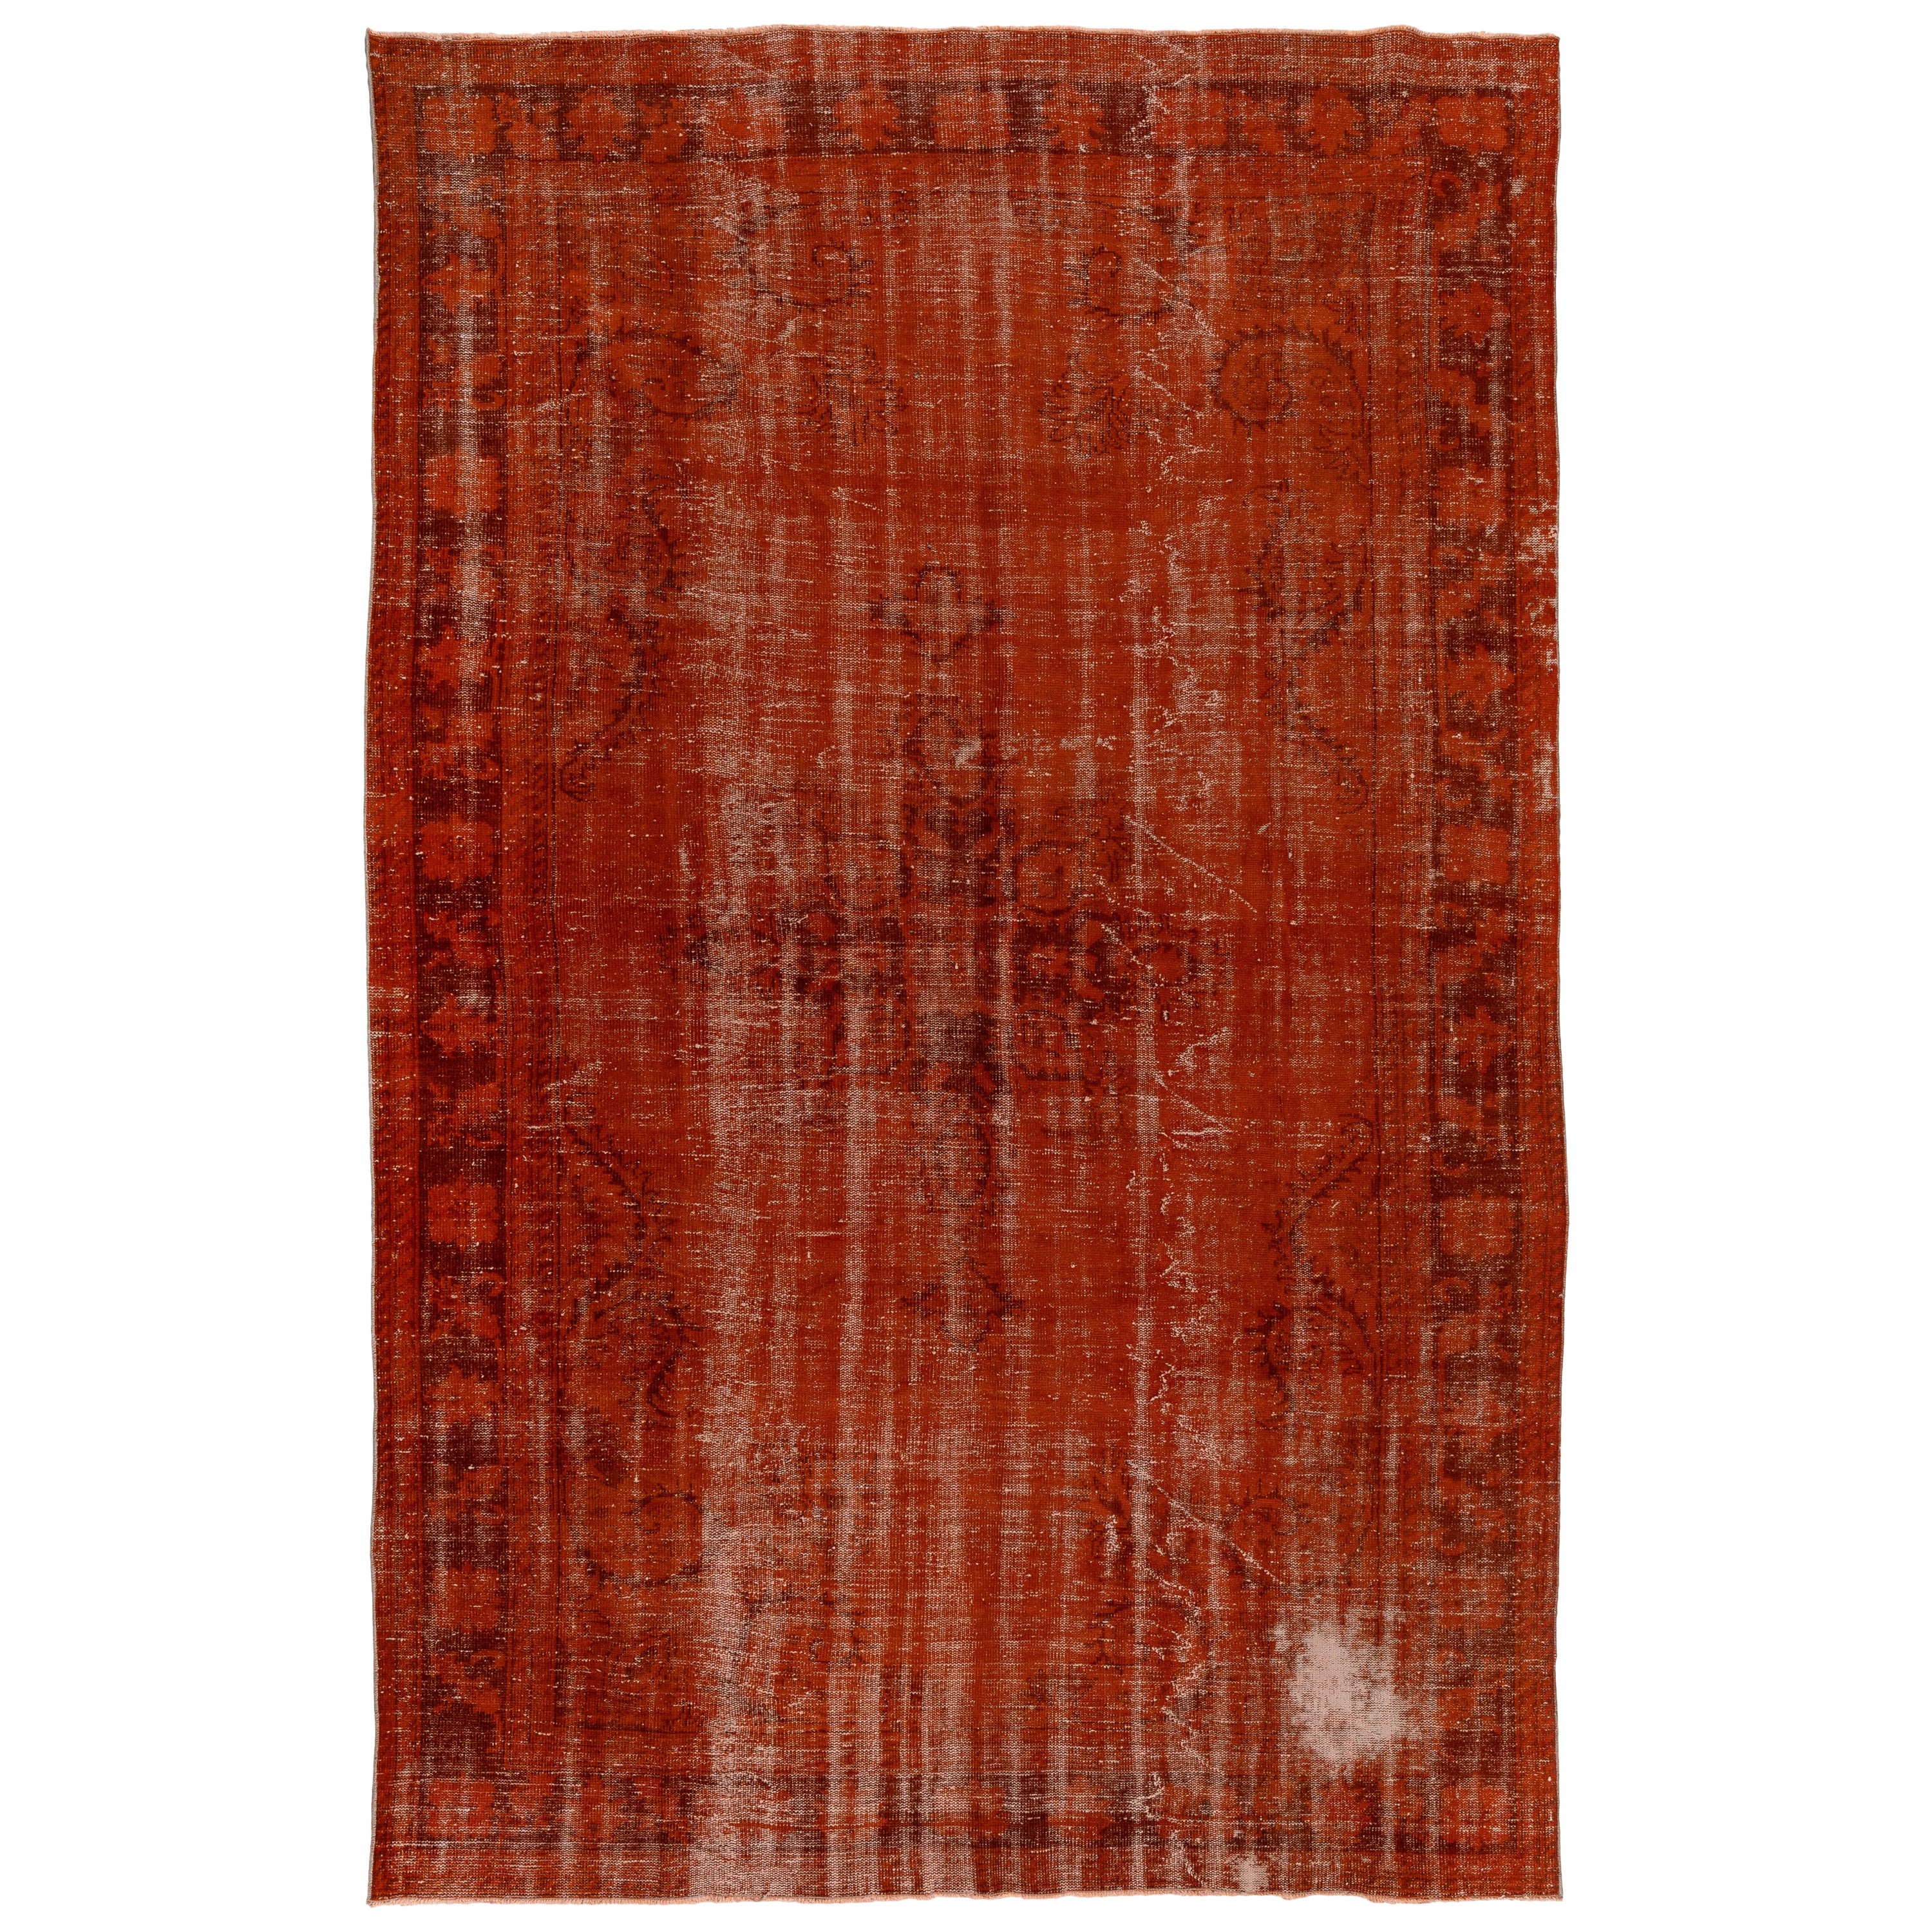 7.6x11.4 Ft Handgefertigter türkischer Teppich in Orange. Mid-Century Distressed-Teppich im Angebot